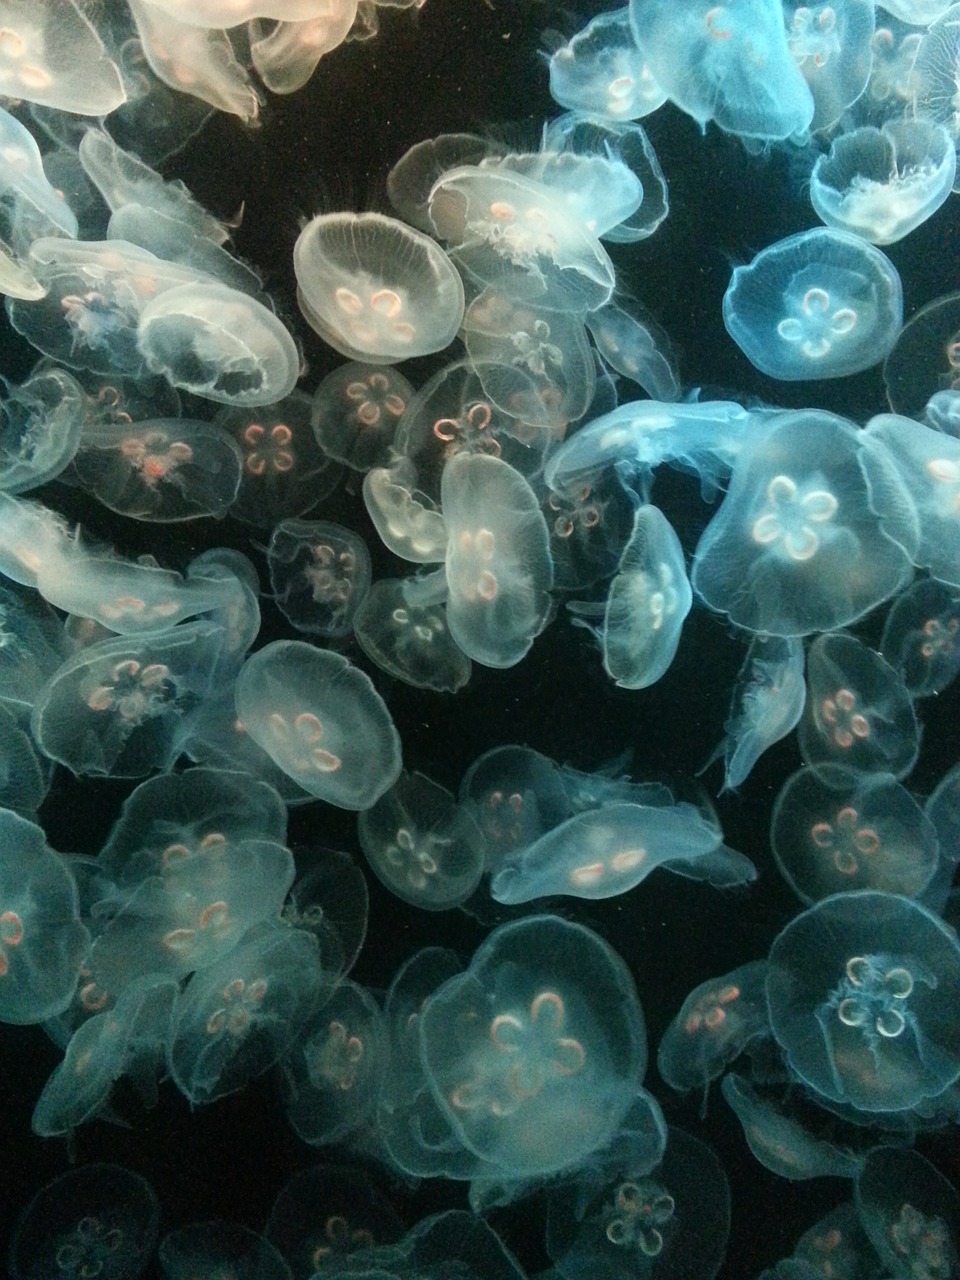 glowing jellyfish jelly fish free photo